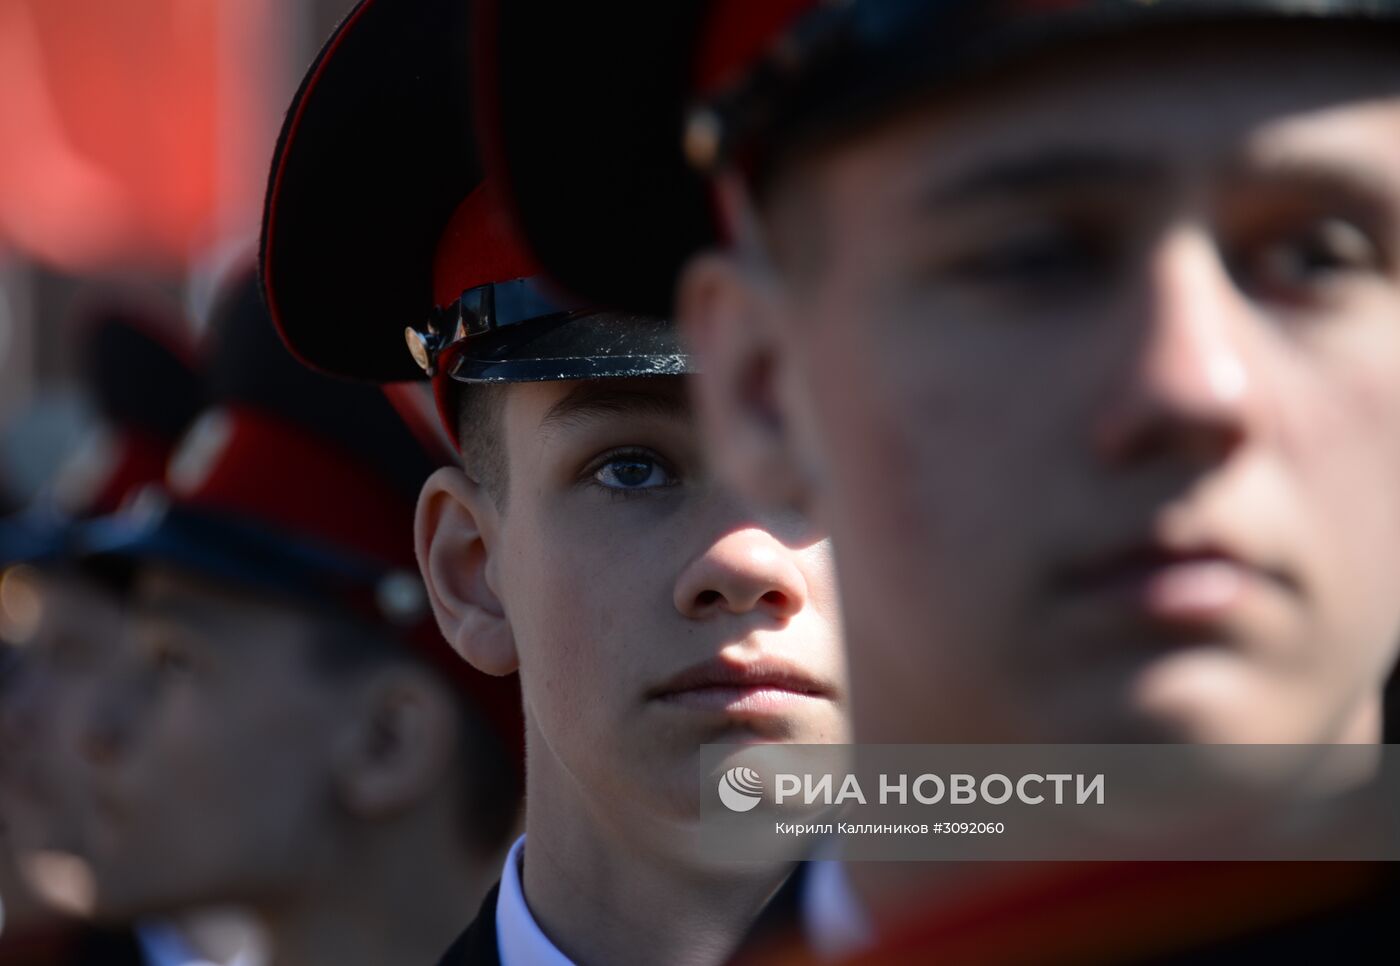 Парад московских кадетов на Поклонной горе